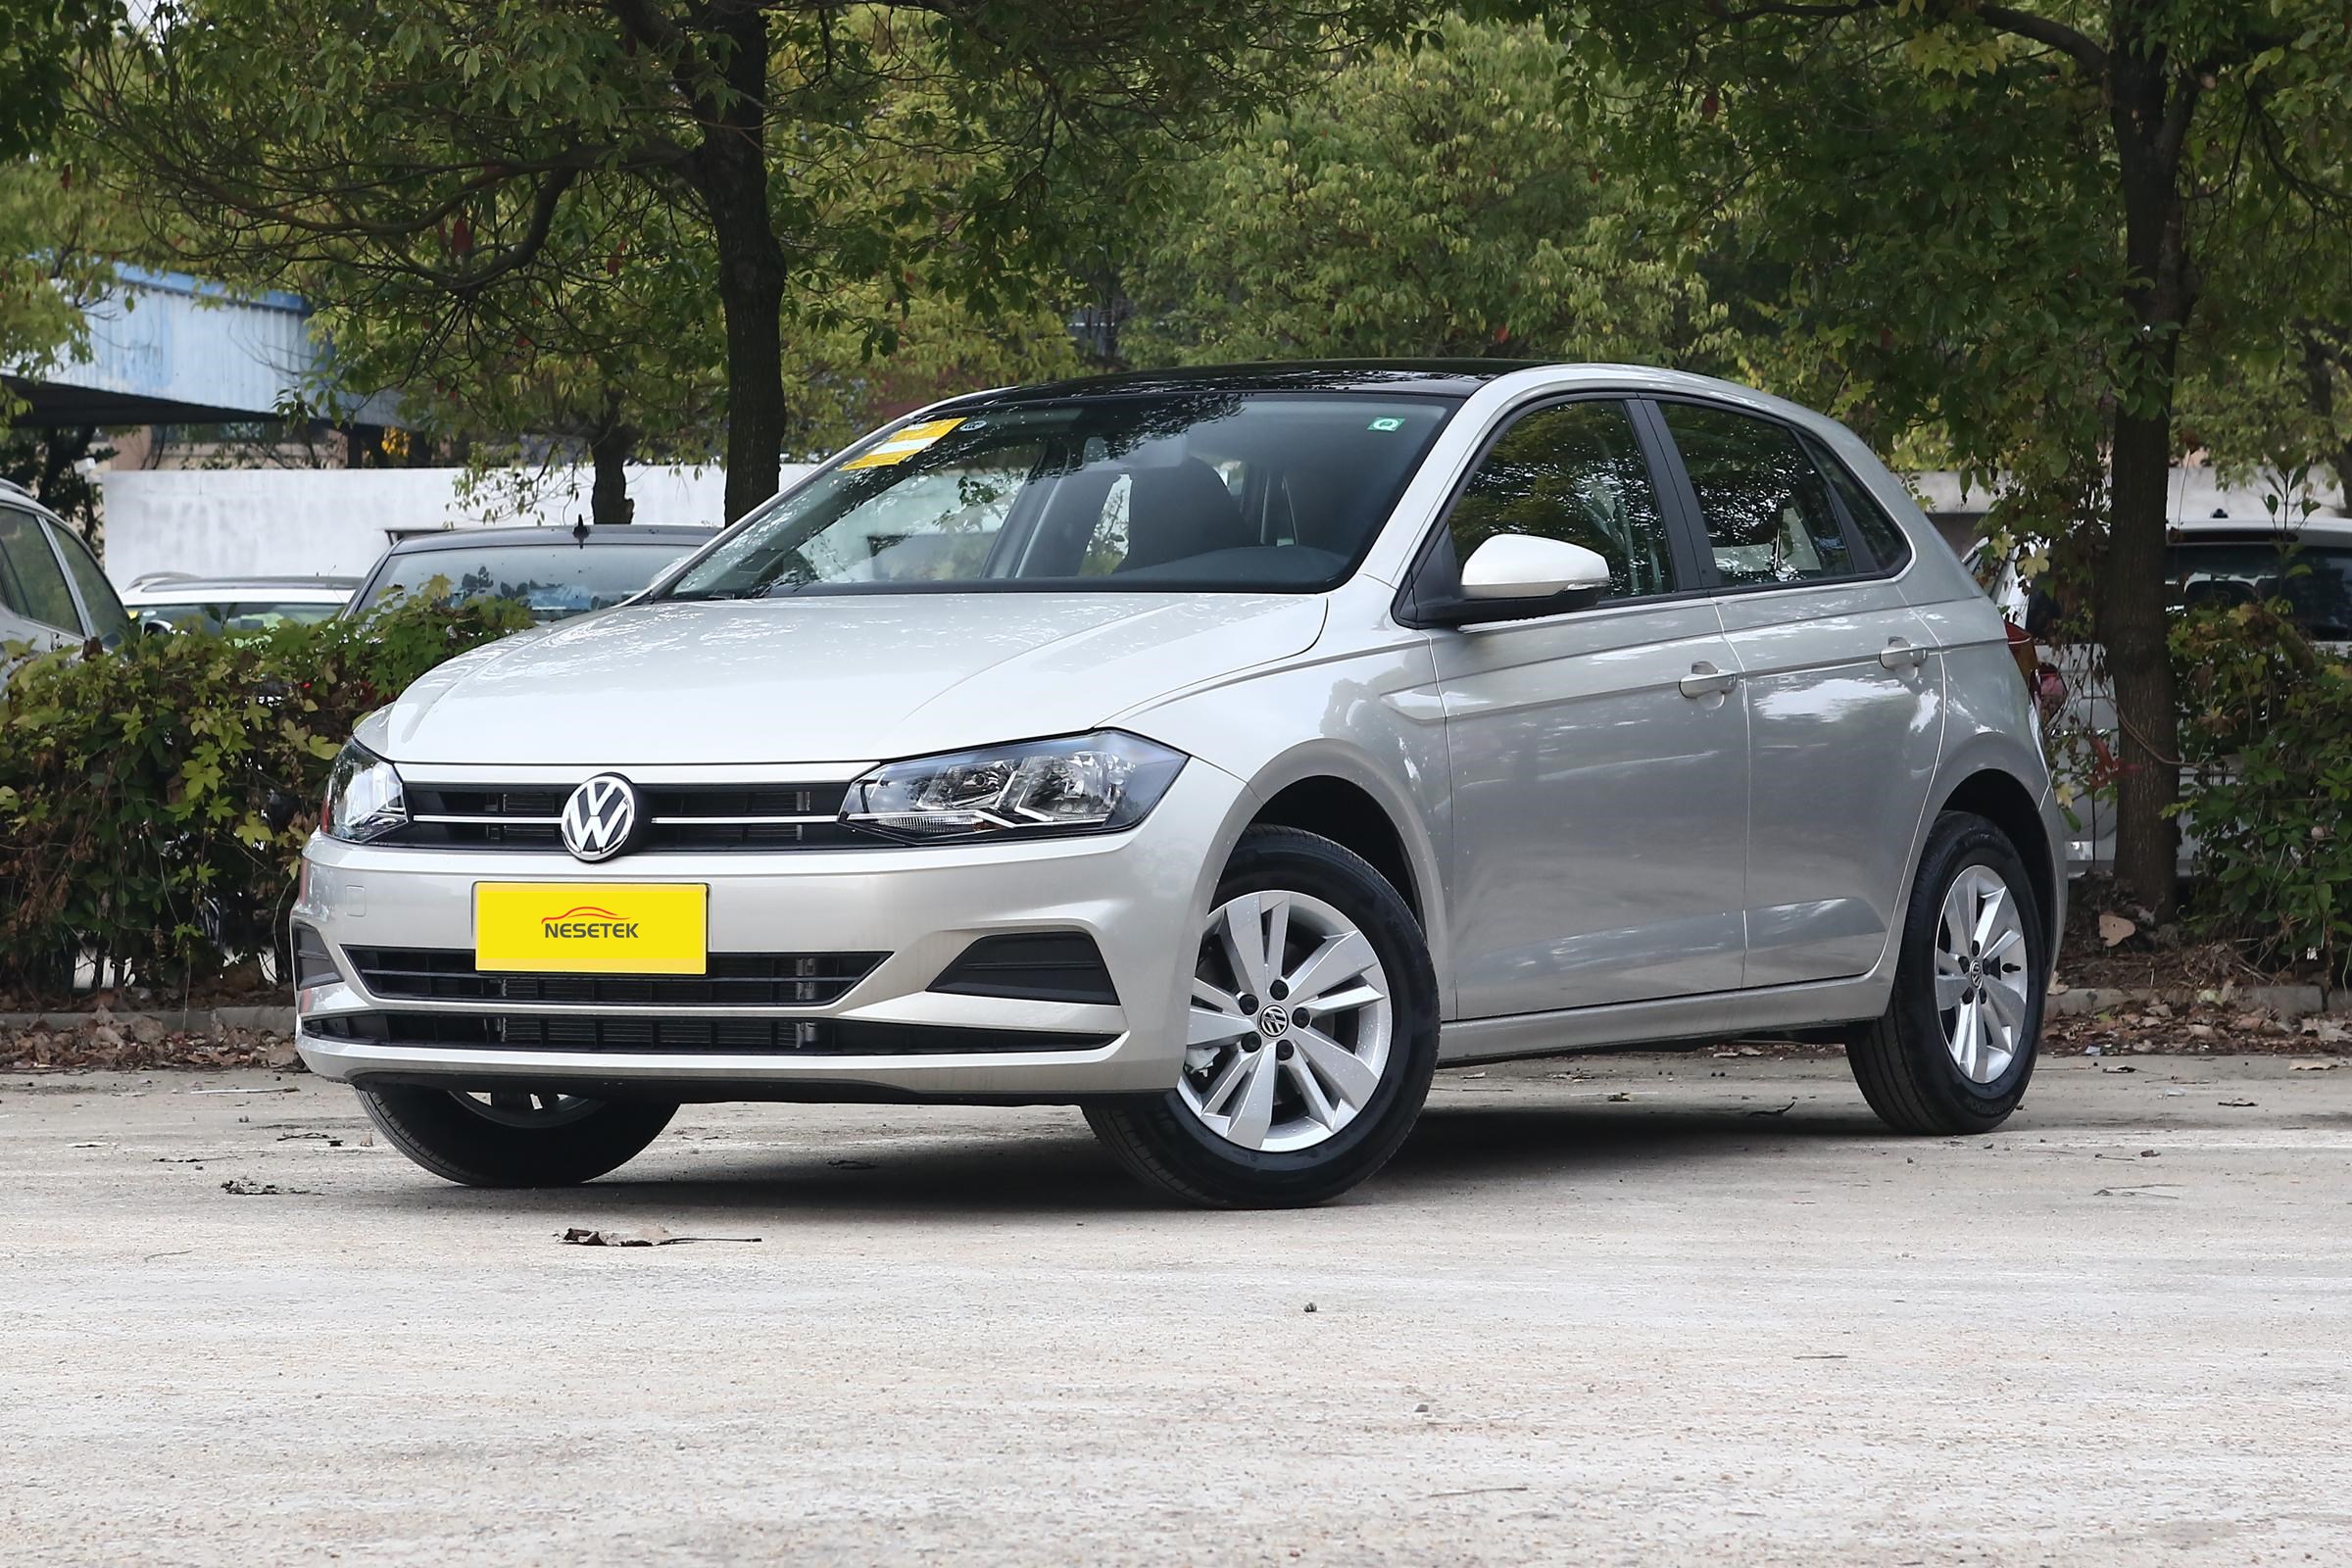 Volkswagon Polo uued autod VW bensiinimootor odava hinnaga Hiina edasimüüja eksportija